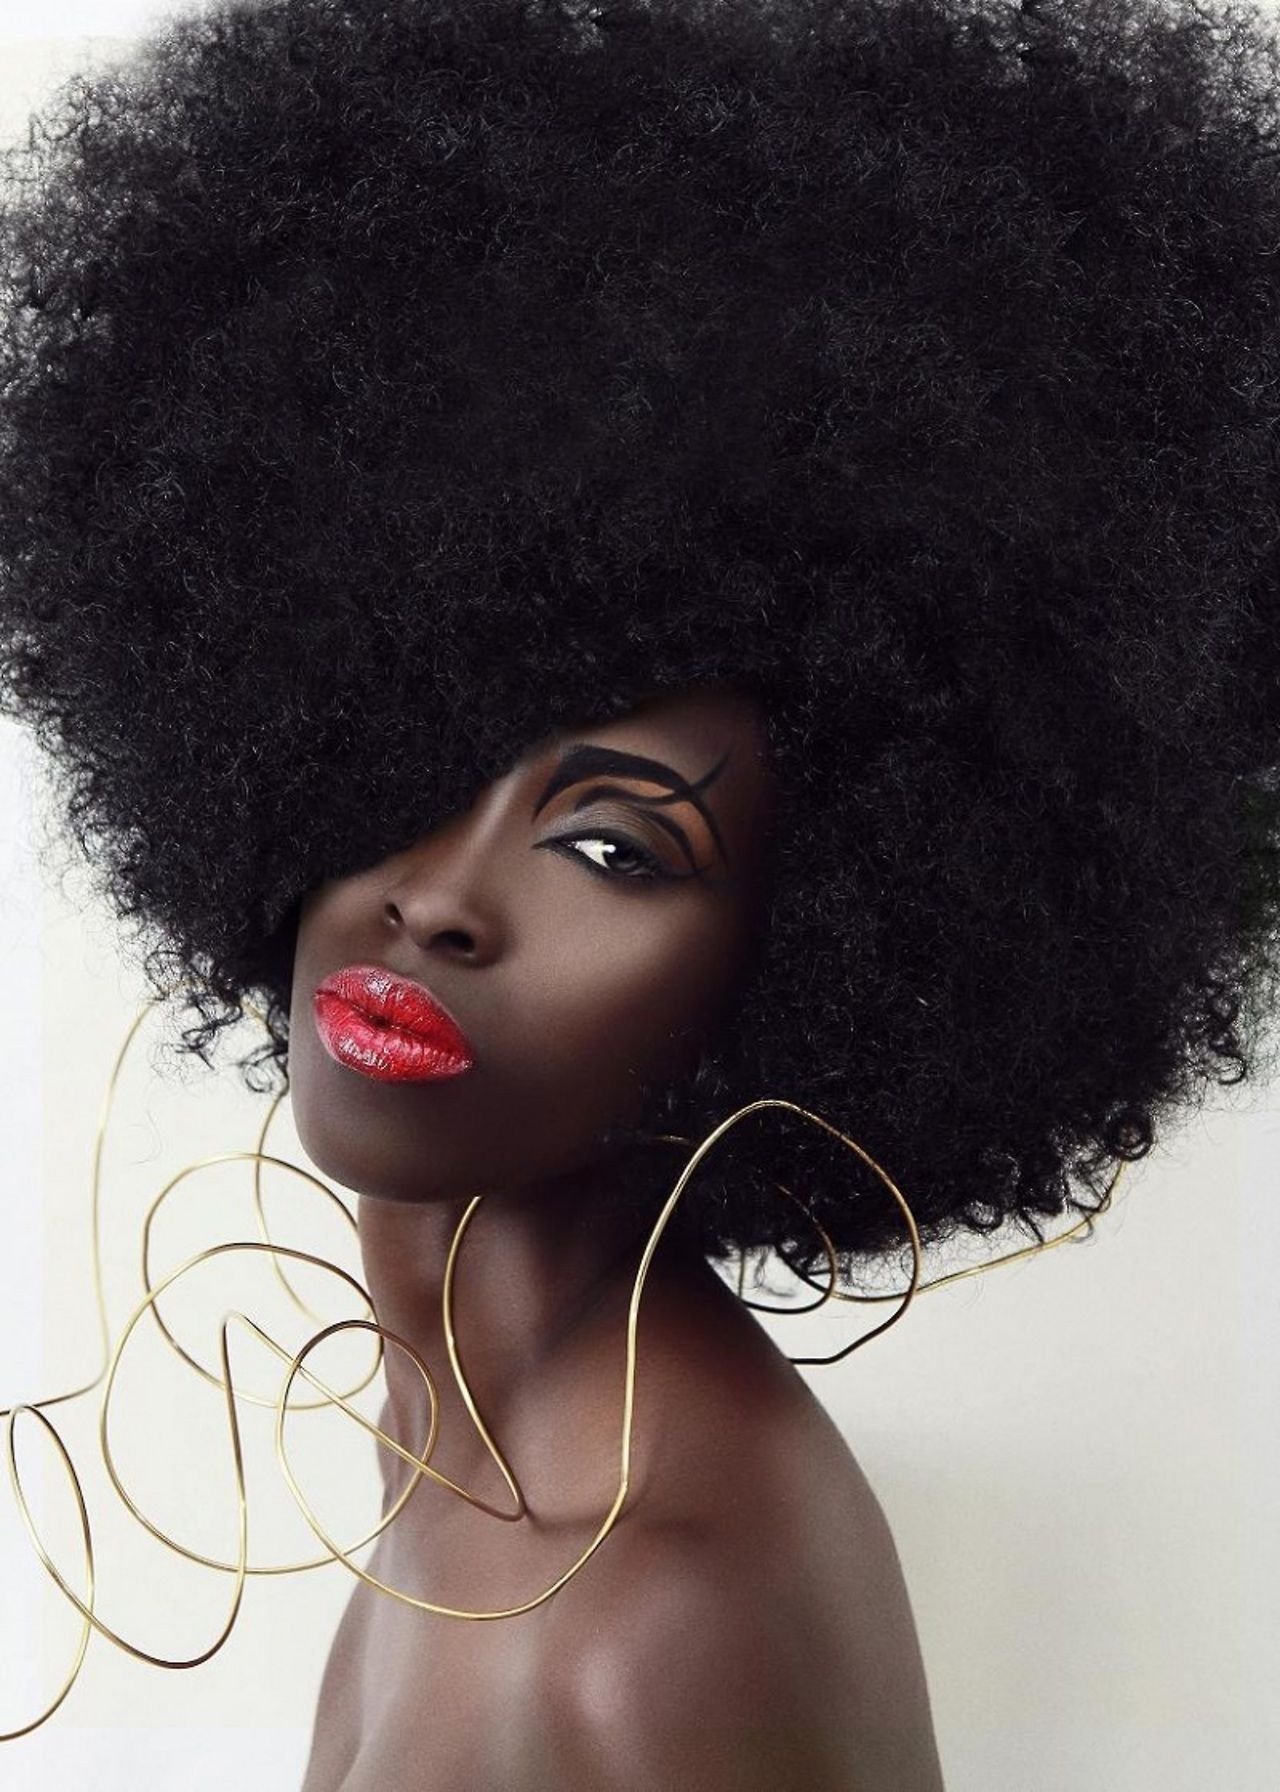 Музыка негритянок. Соул певица афроамериканка. Афро прическа женская. Волосы афроамериканок. Девушка с афро прической.